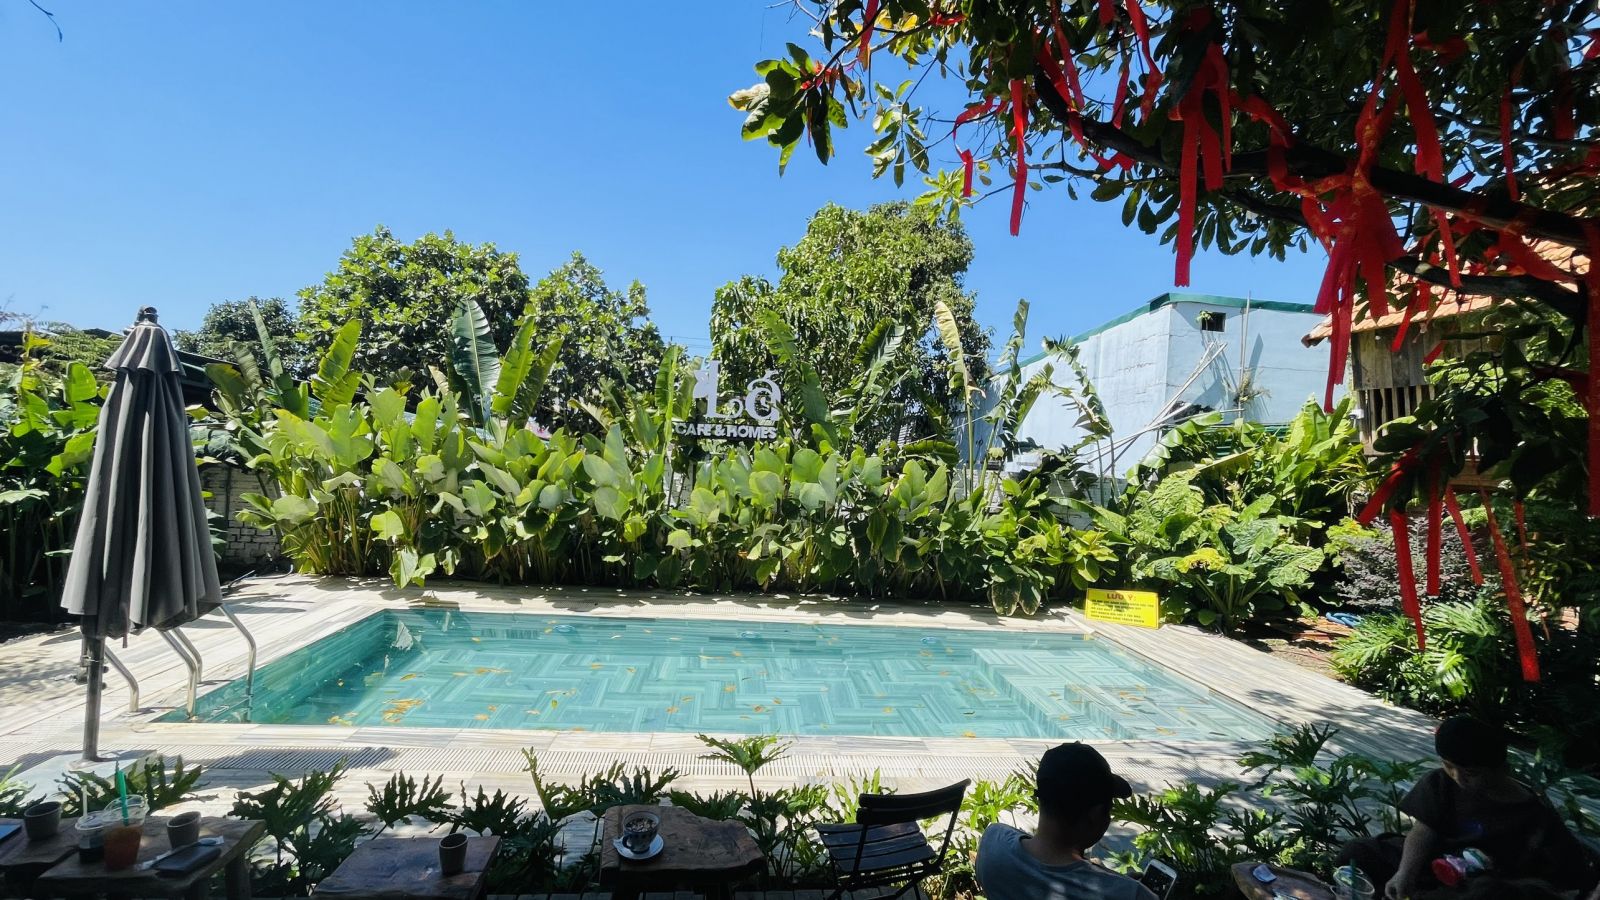 Thiết kế xây dựng hồ bơi khu nghỉ dưỡng-resort chuyên nghiệp tại Cà Mau